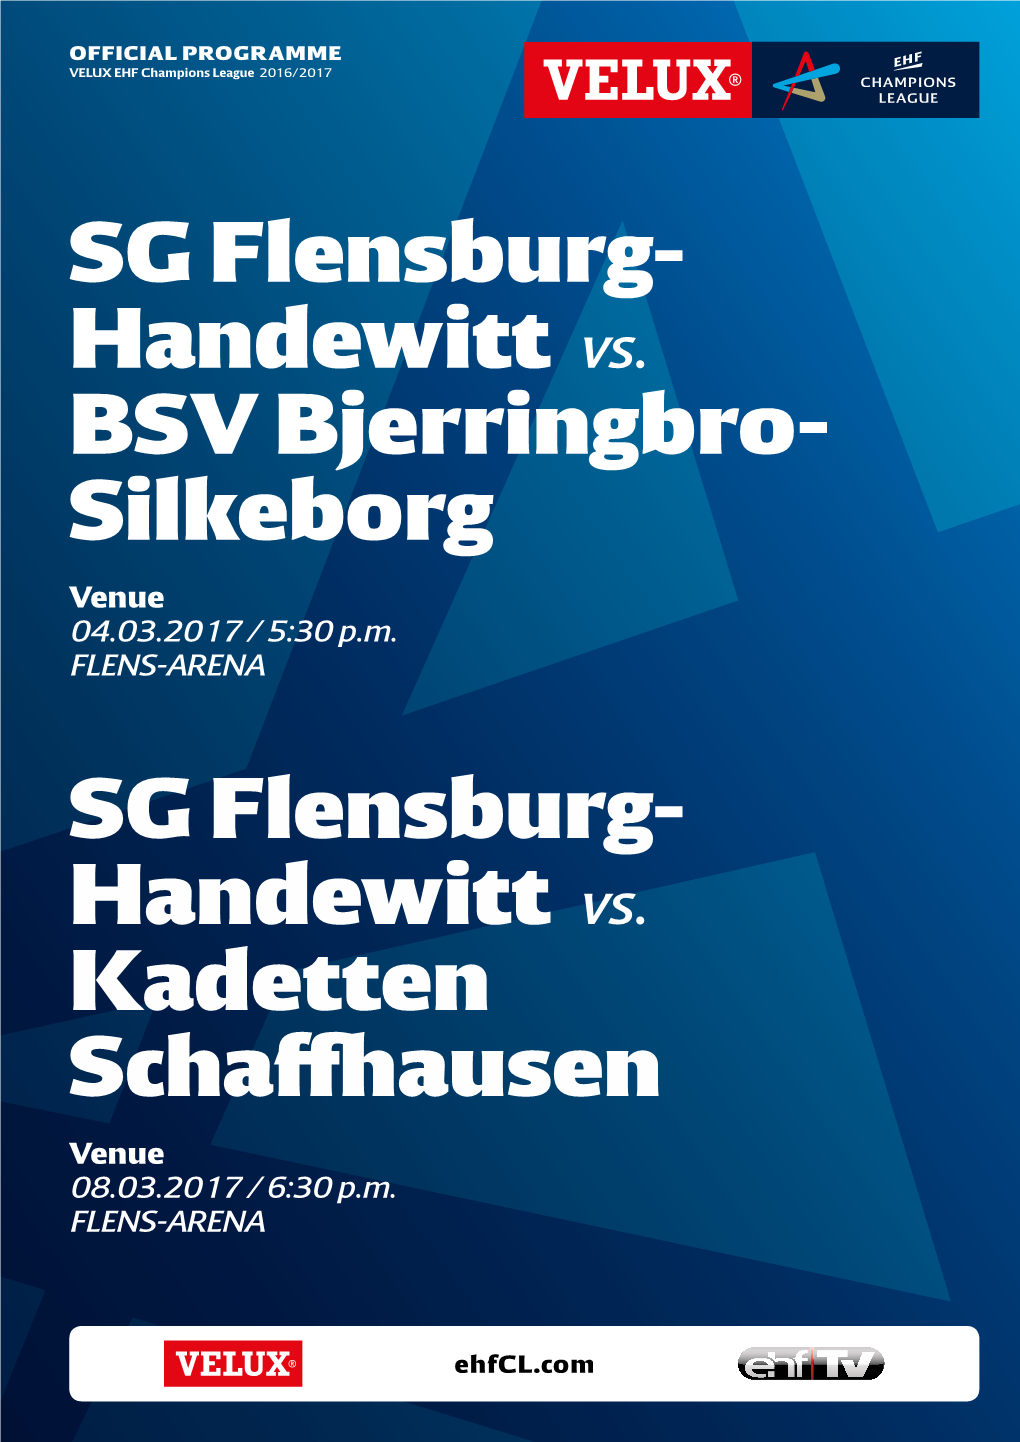 SG Flensburg- Handewitt Vs. BSV Bjerringbro- Silkeborg SG Flensburg- Handewitt Vs. Kadetten Schaffhausen